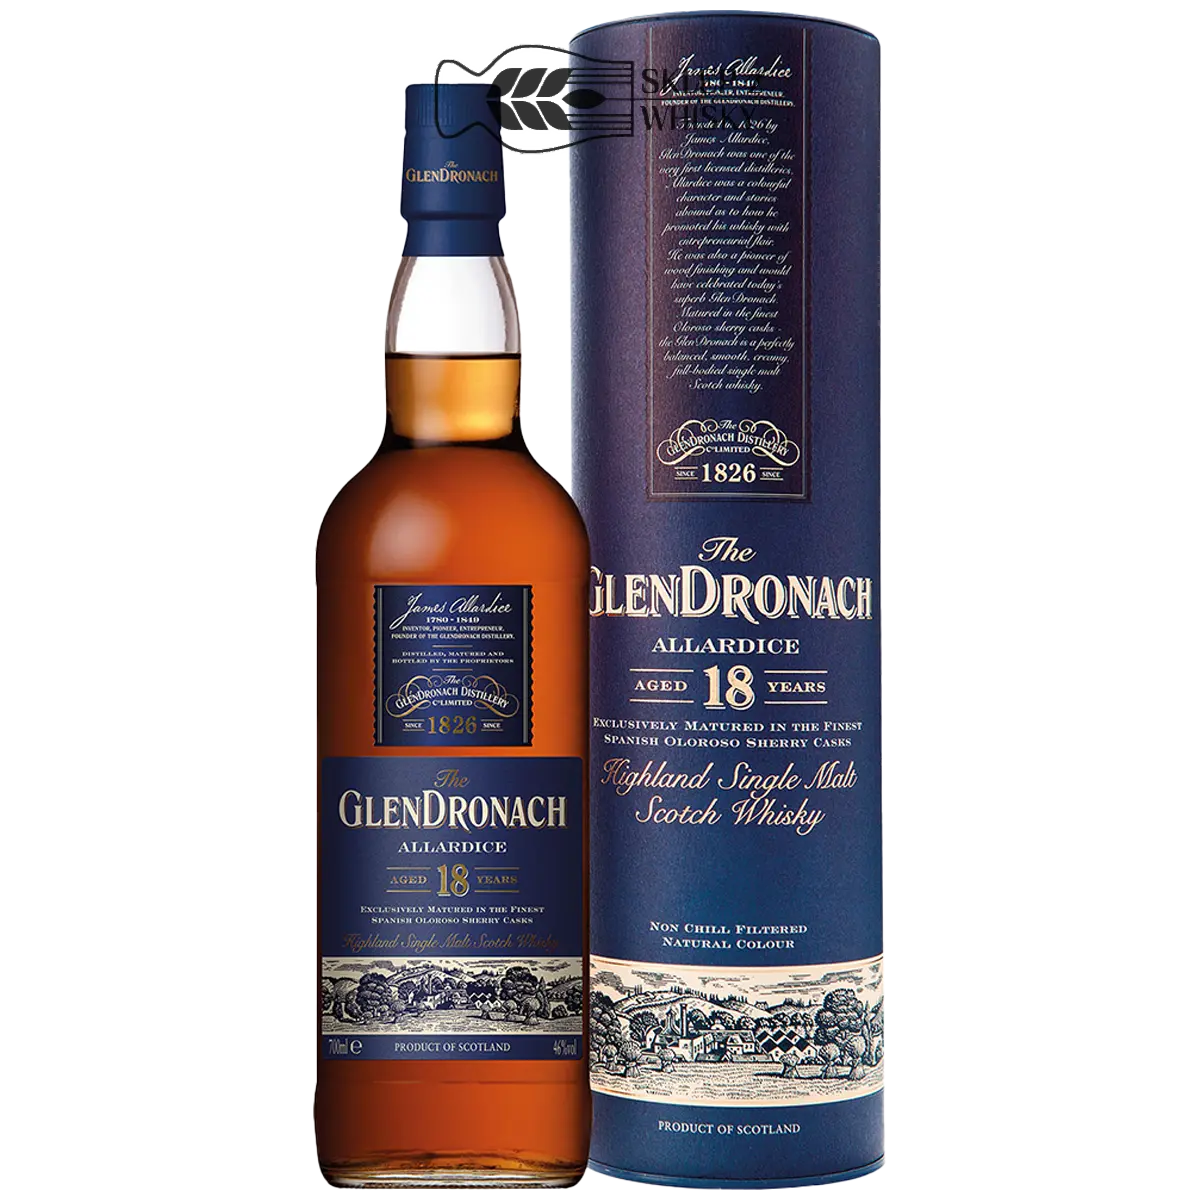 Glendronach 18 YO Allardice - szkocka whisky single malt z regionu Highlands, 700 ml, w pudełku